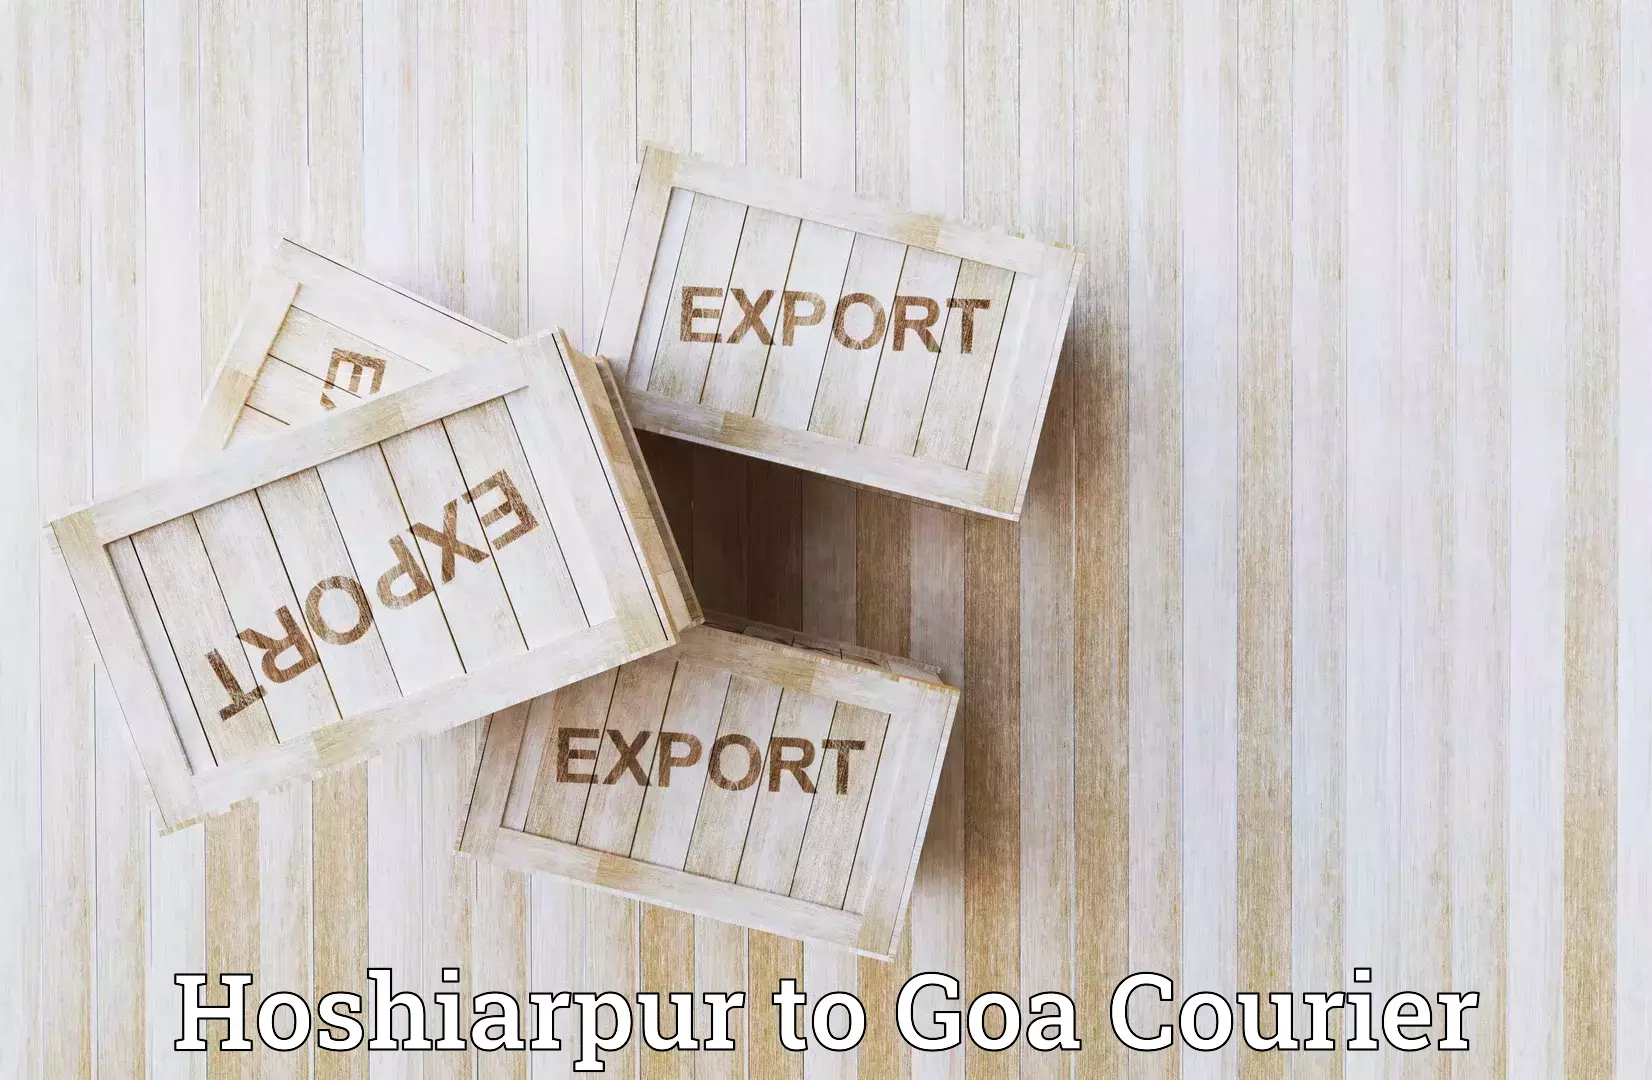 Fast delivery service in Hoshiarpur to Goa